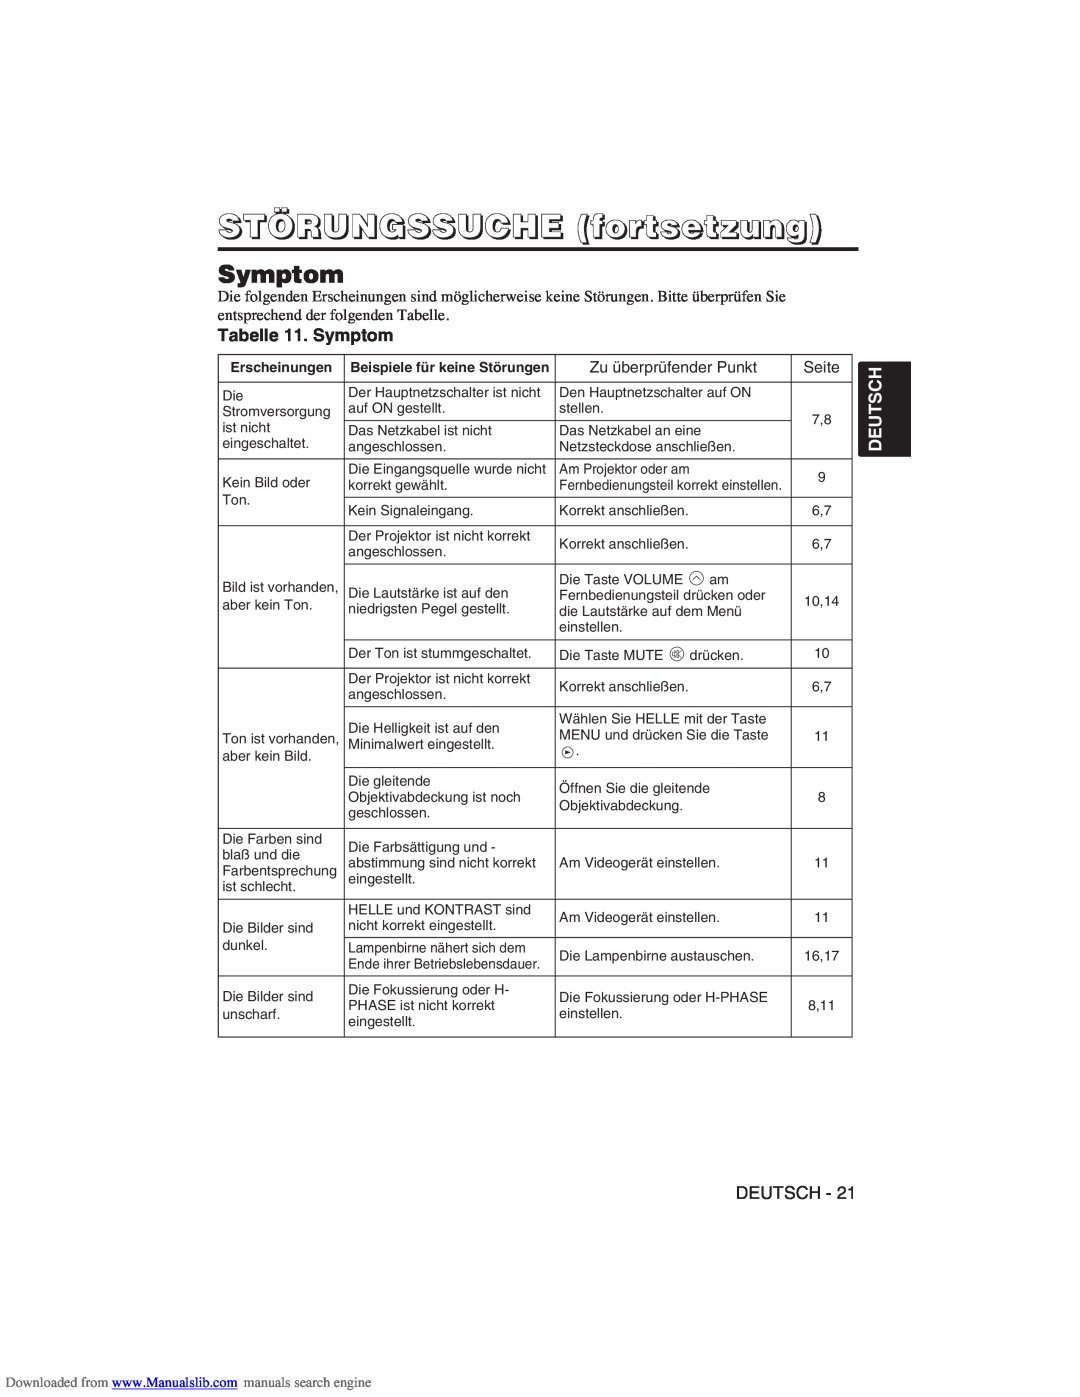 Hitachi CP-X275W user manual Tabelle 11. Symptom, STÖRUNGSSUCHE fortsetzung, Deutsch, Zu überprüfender Punkt, Seite 